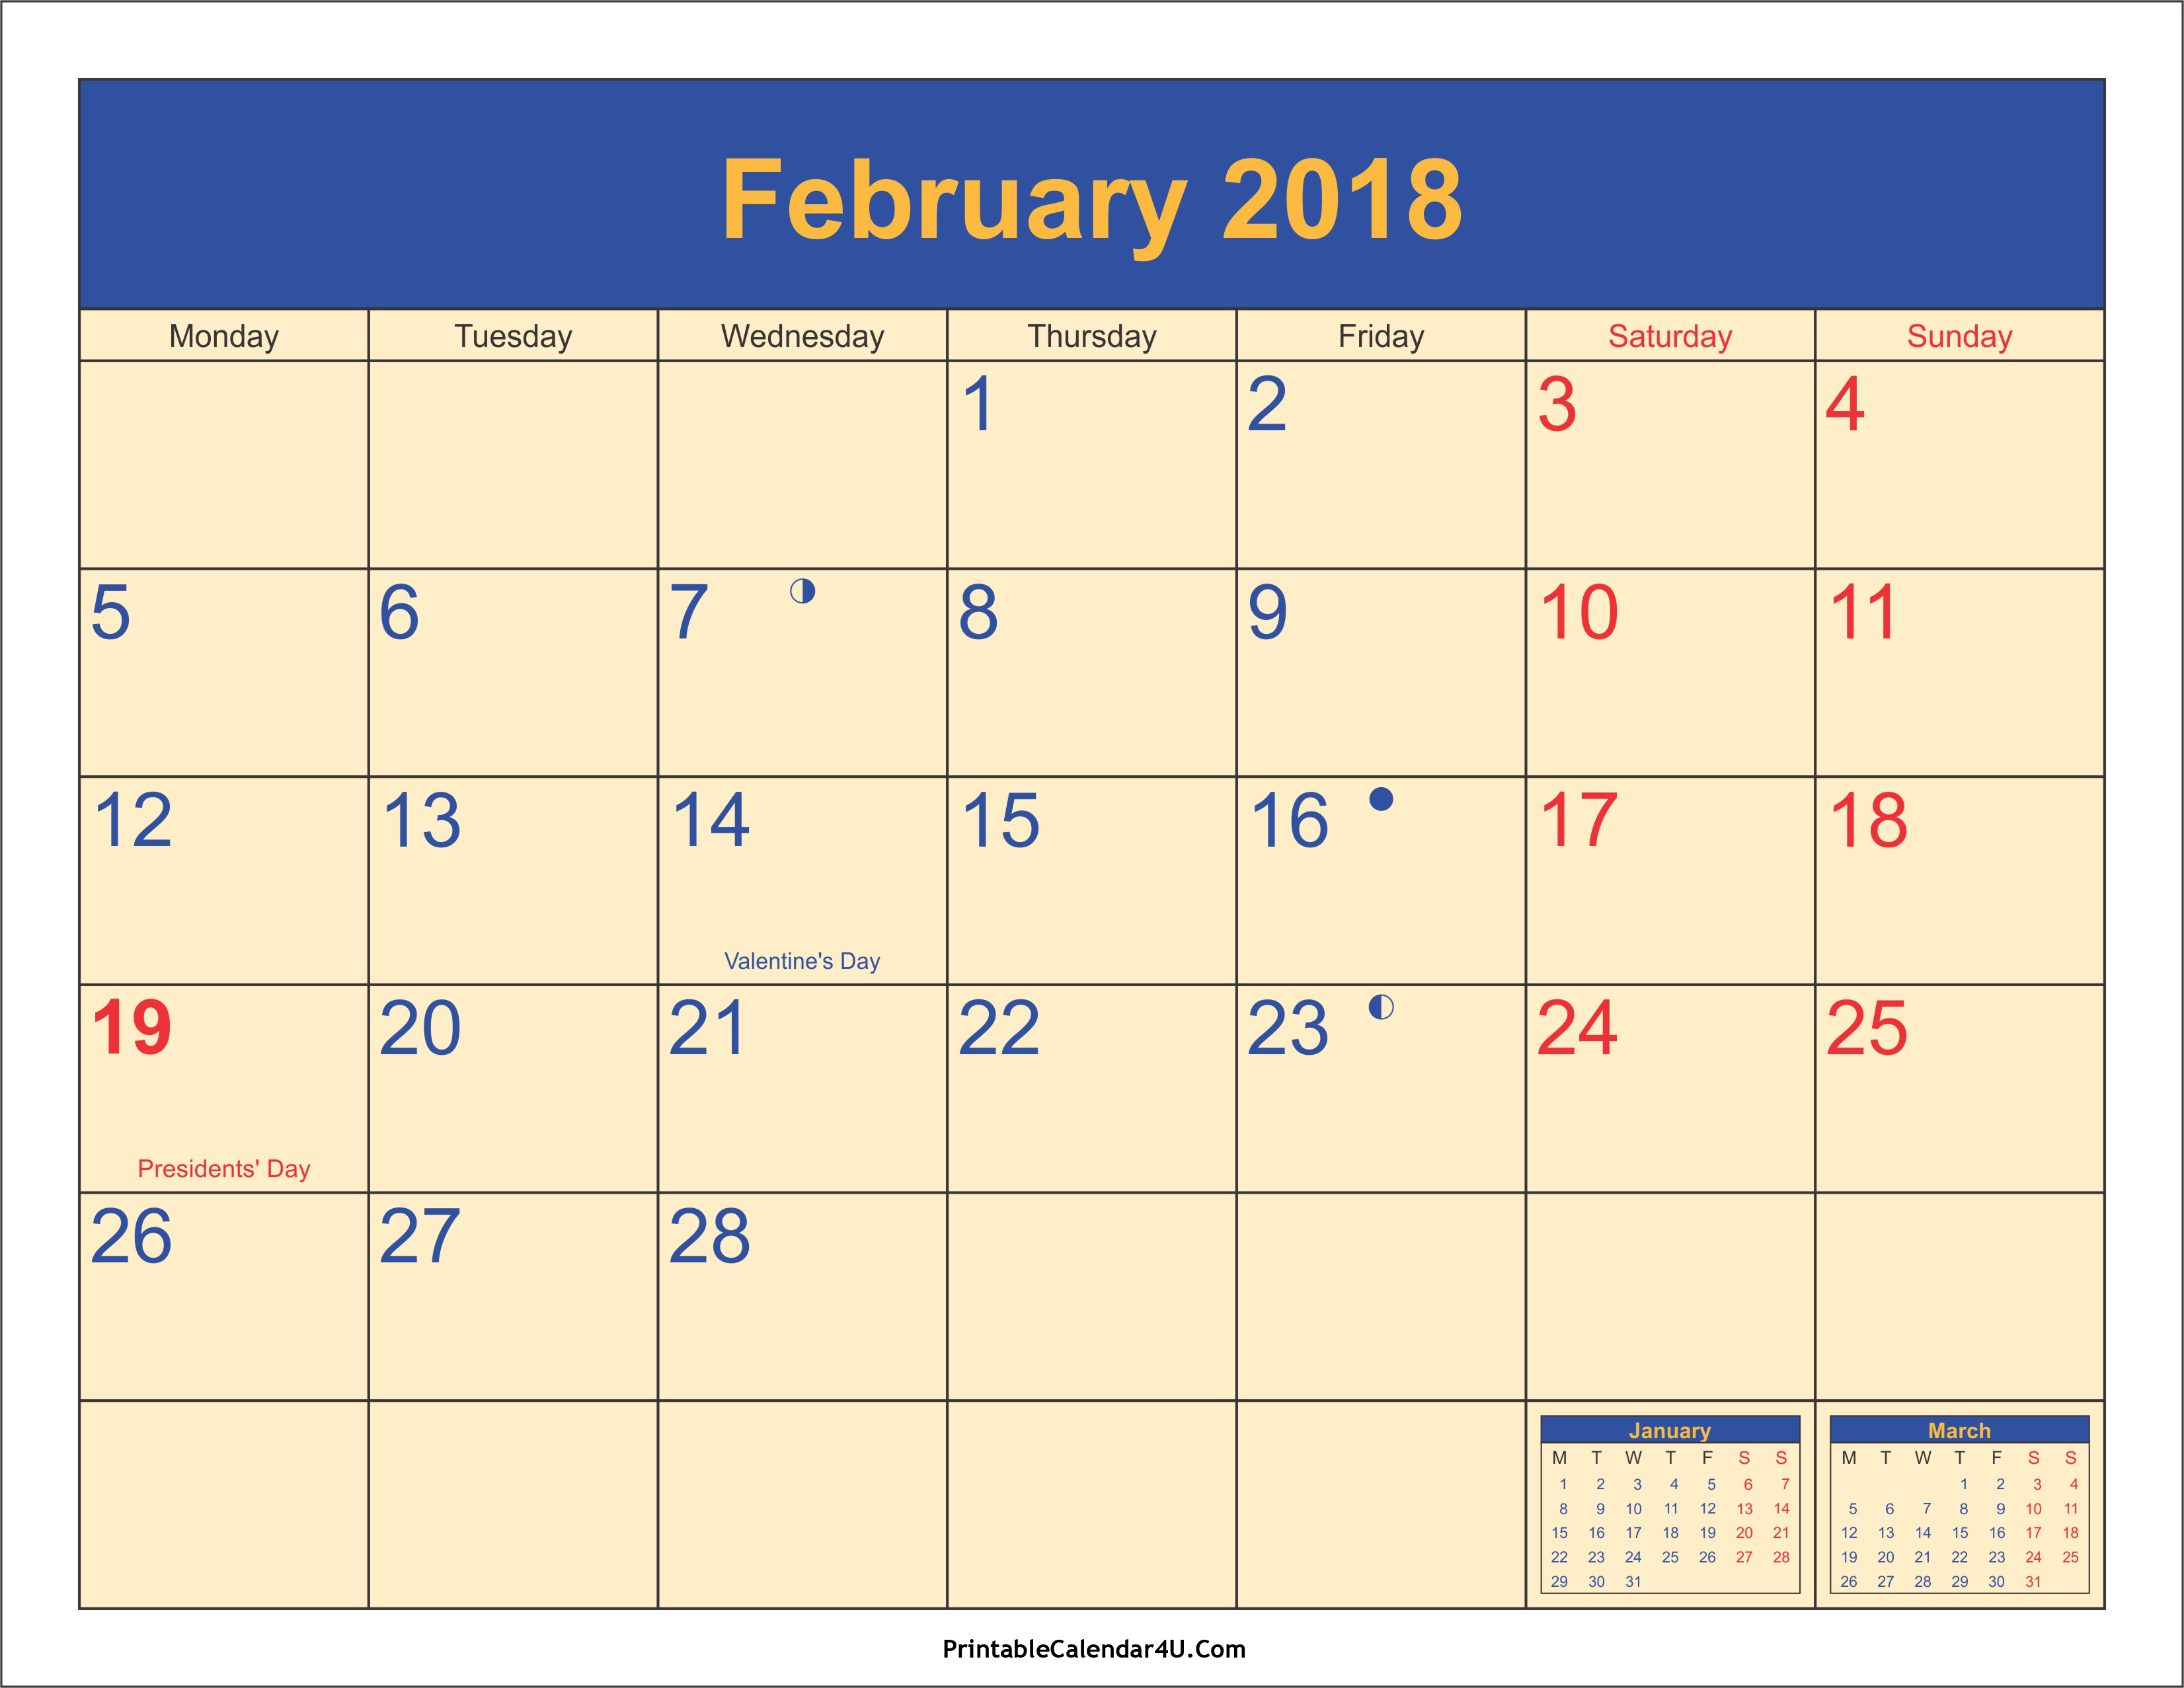 February 2018 calendar with holidays list